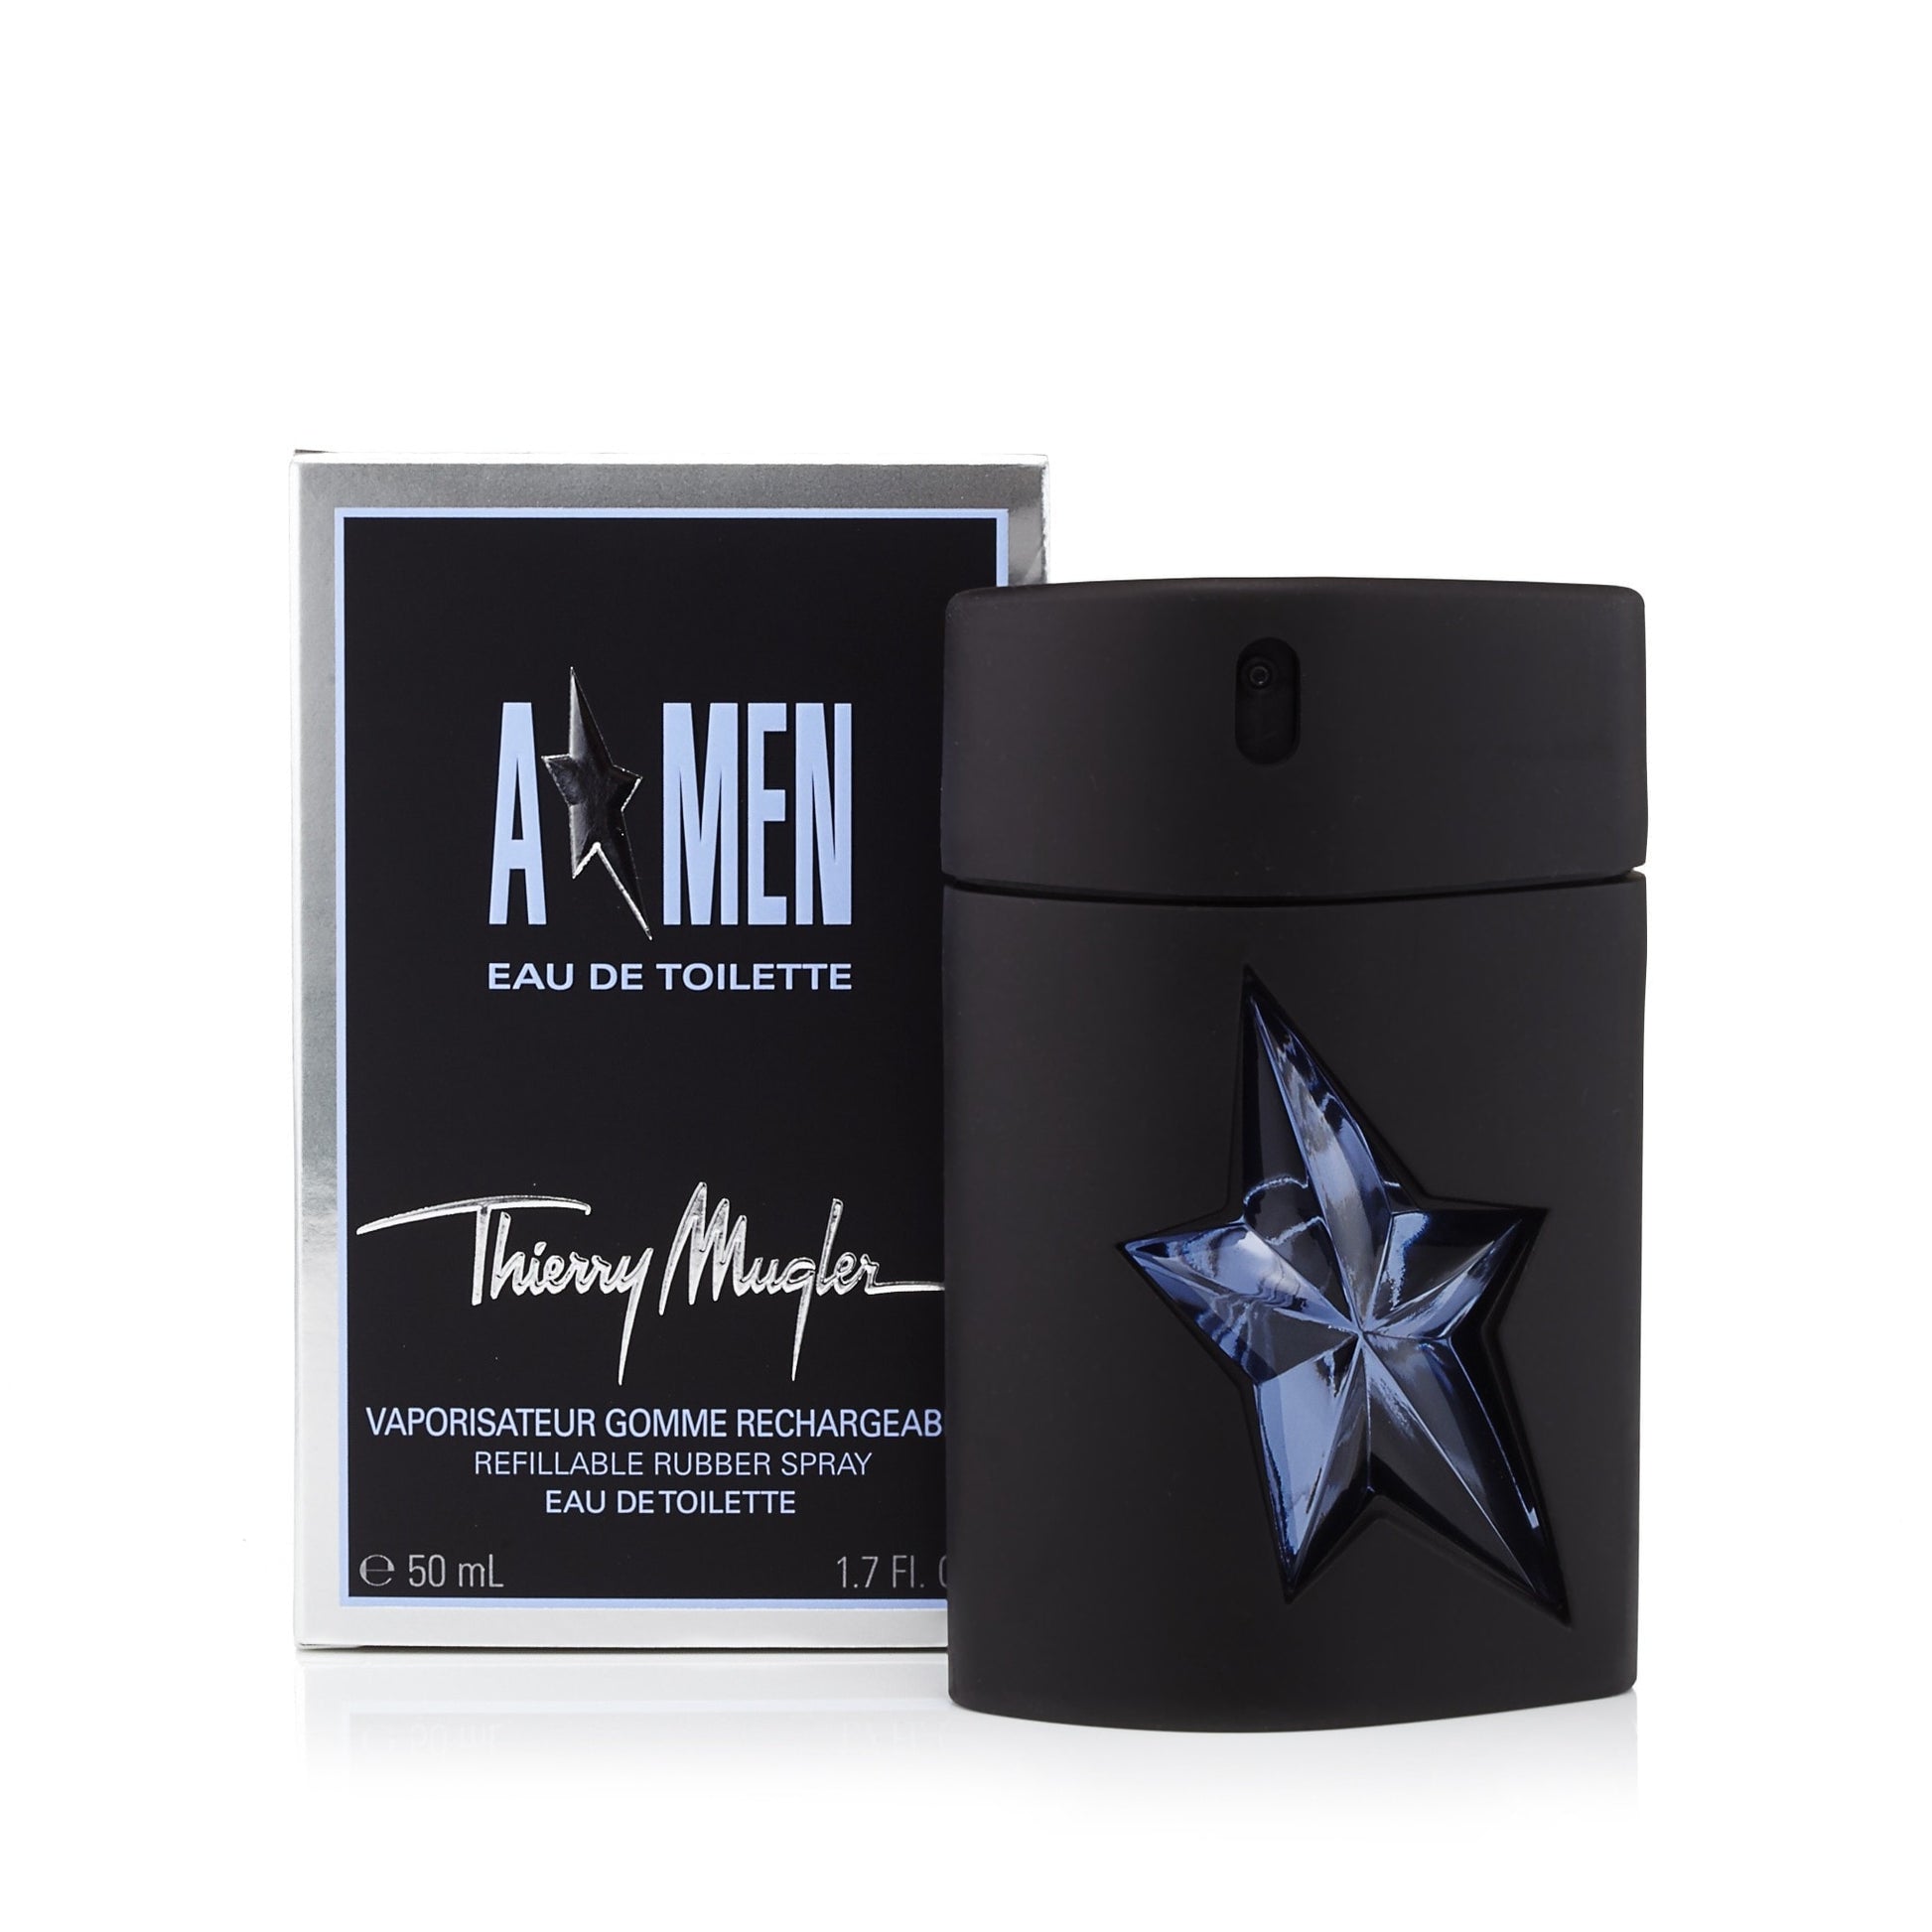 Thierry Mugler A Star Men Eau de Toilette Mens Spray 1.7 oz. Refillable Click to open in modal